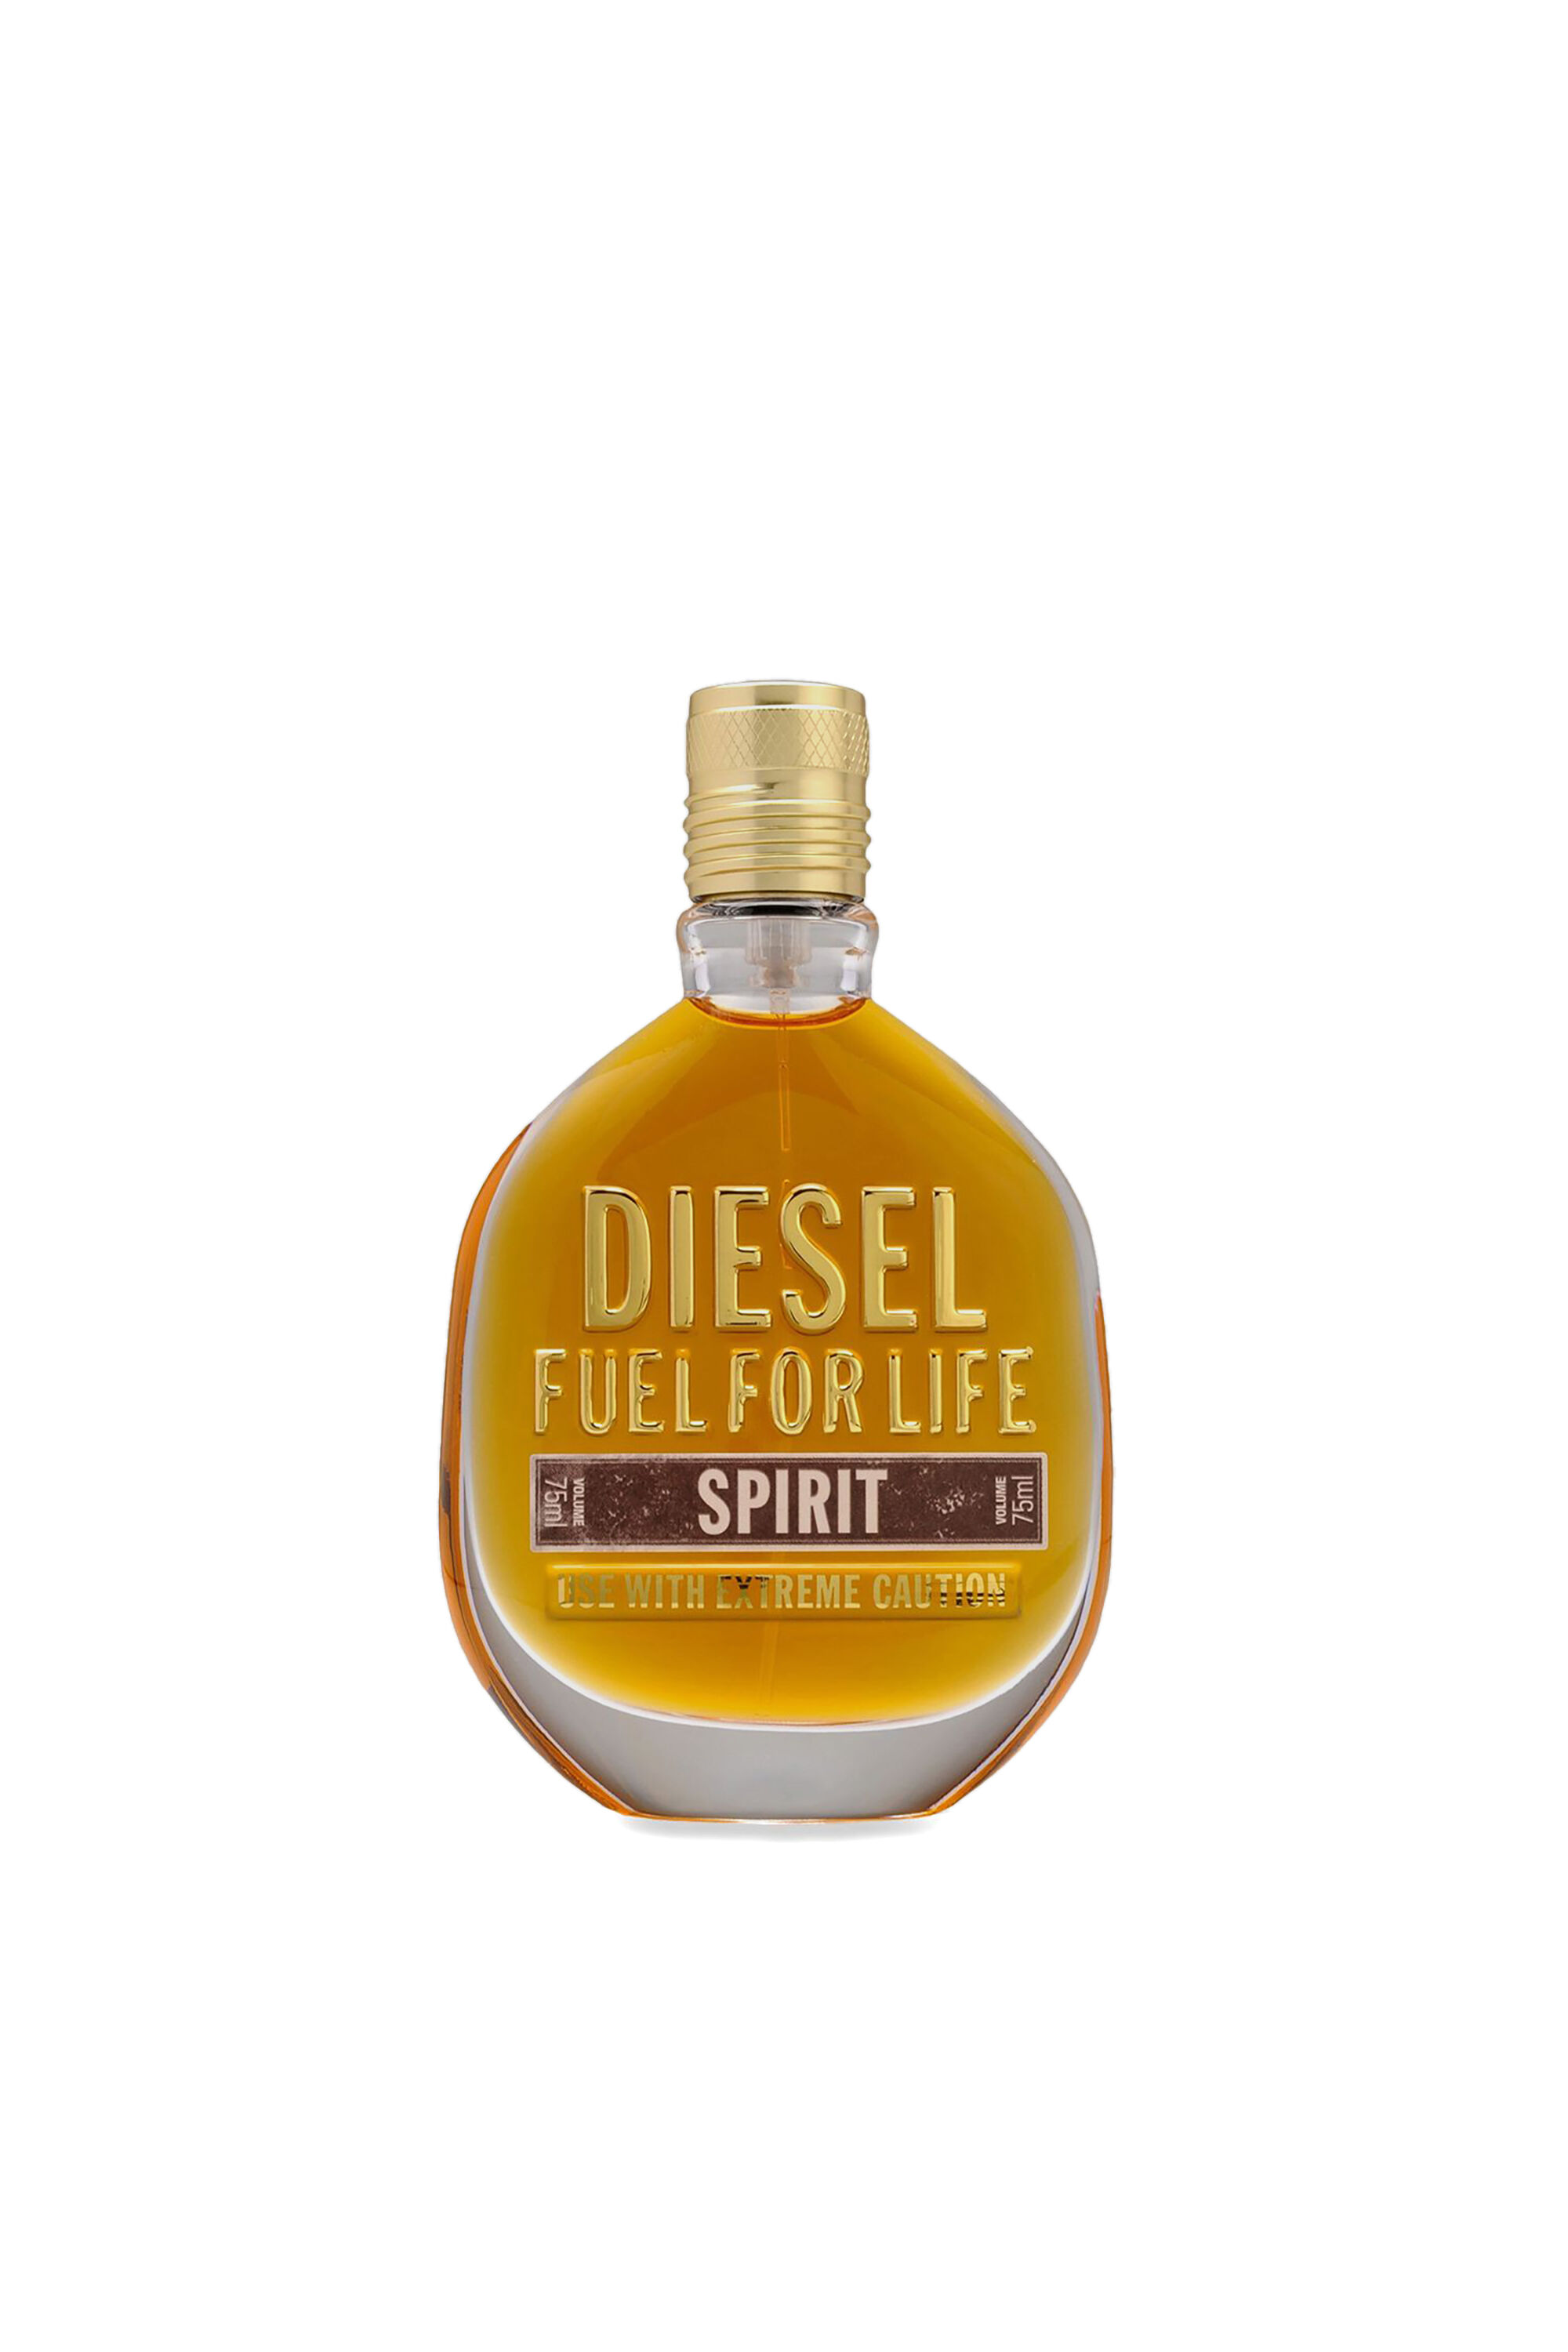 Fuel for life spirit 75ml, eau de toilette | Diesel